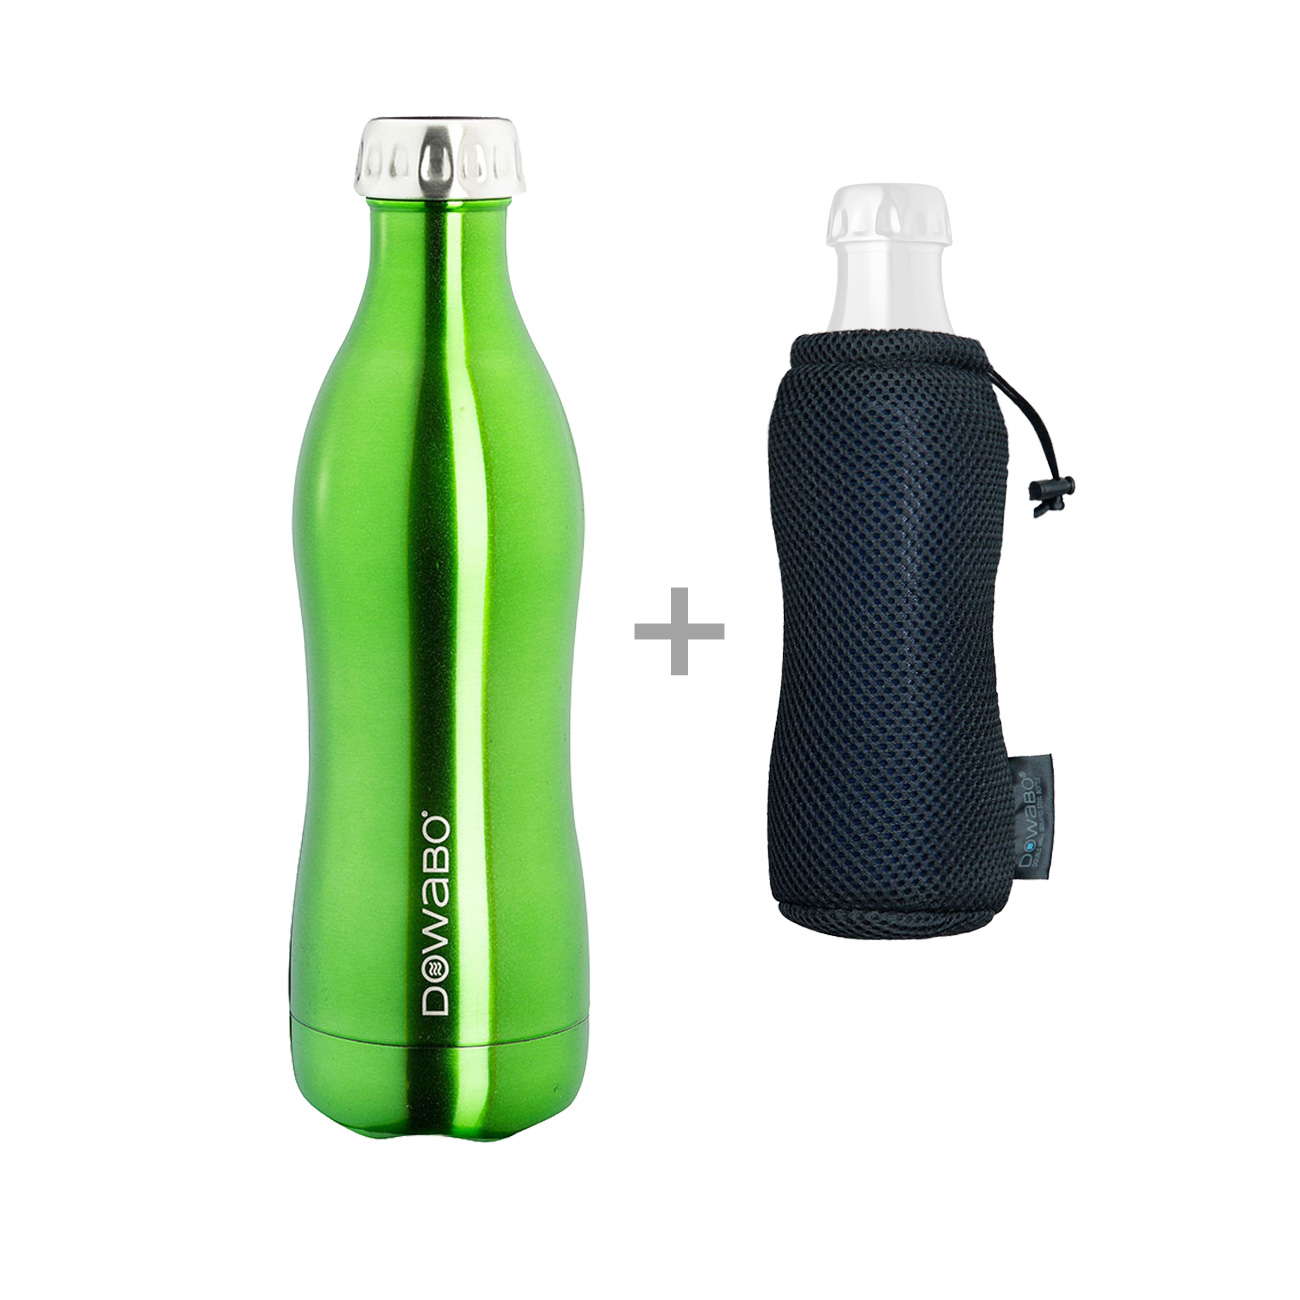 Dowabo Isolierflasche kohlensäuredicht 0,5 Liter grün metallic